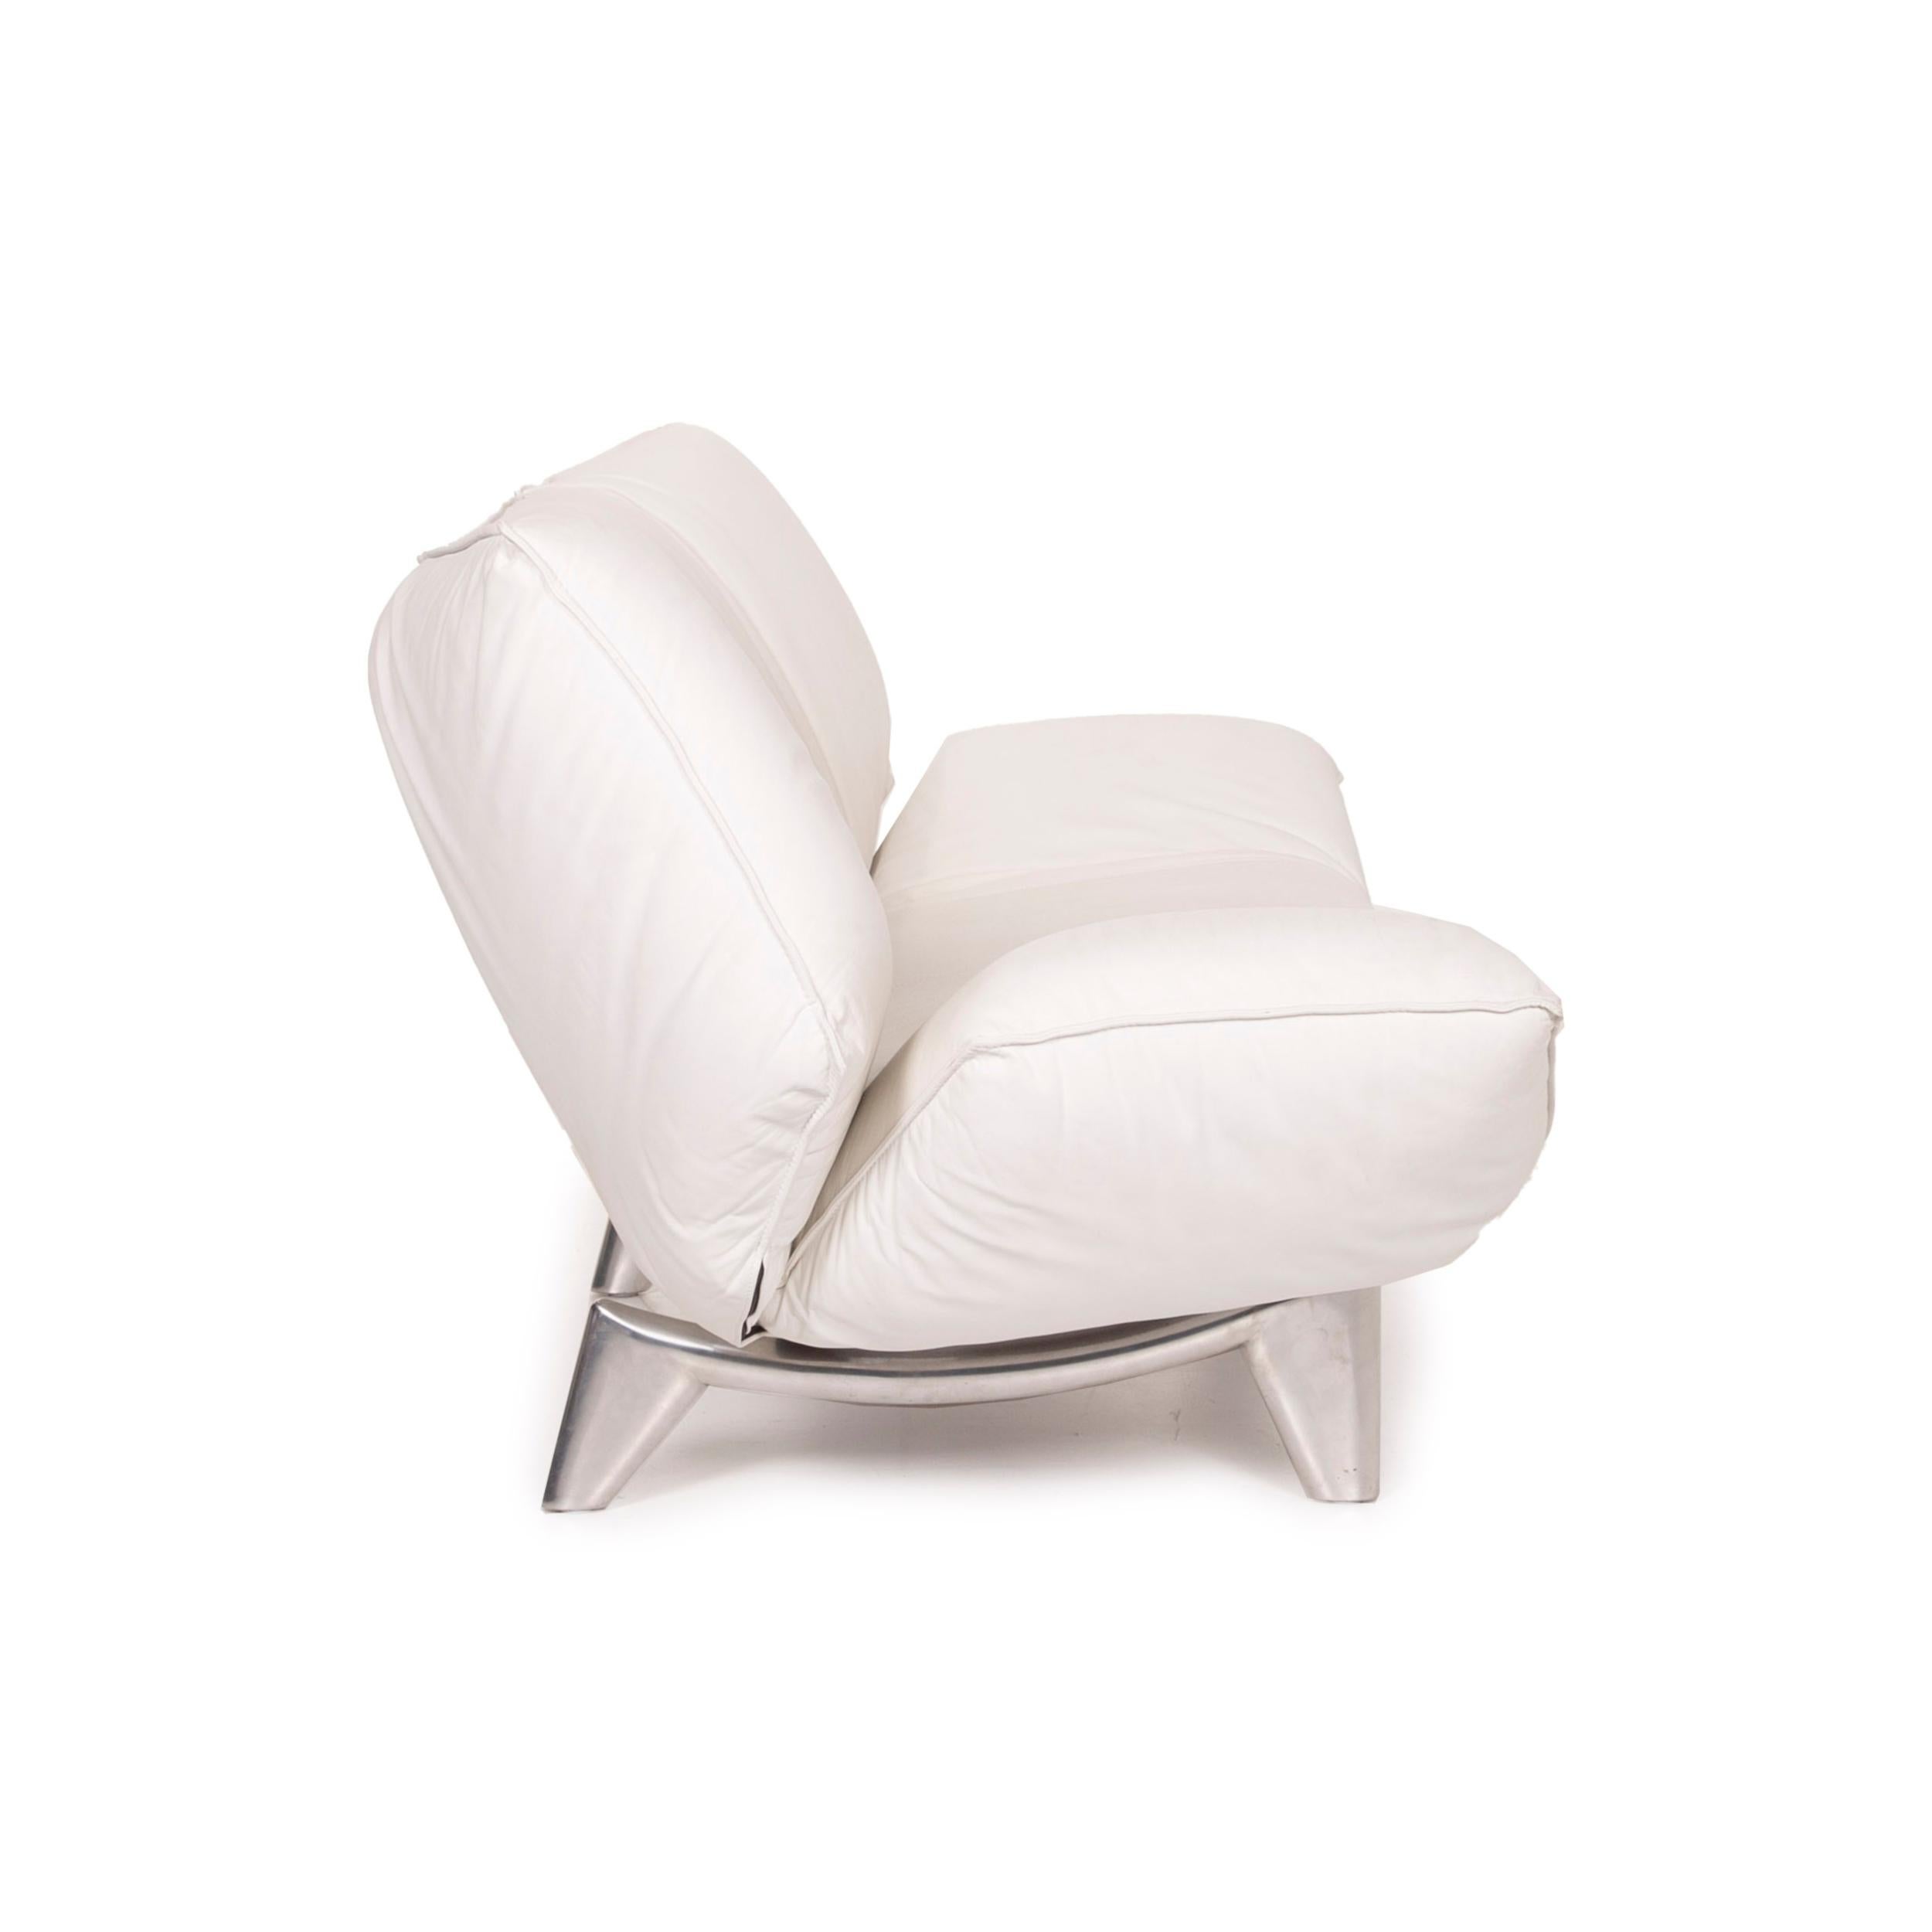 Leolux Tango Leather Sofa White Two-Seater Function 1